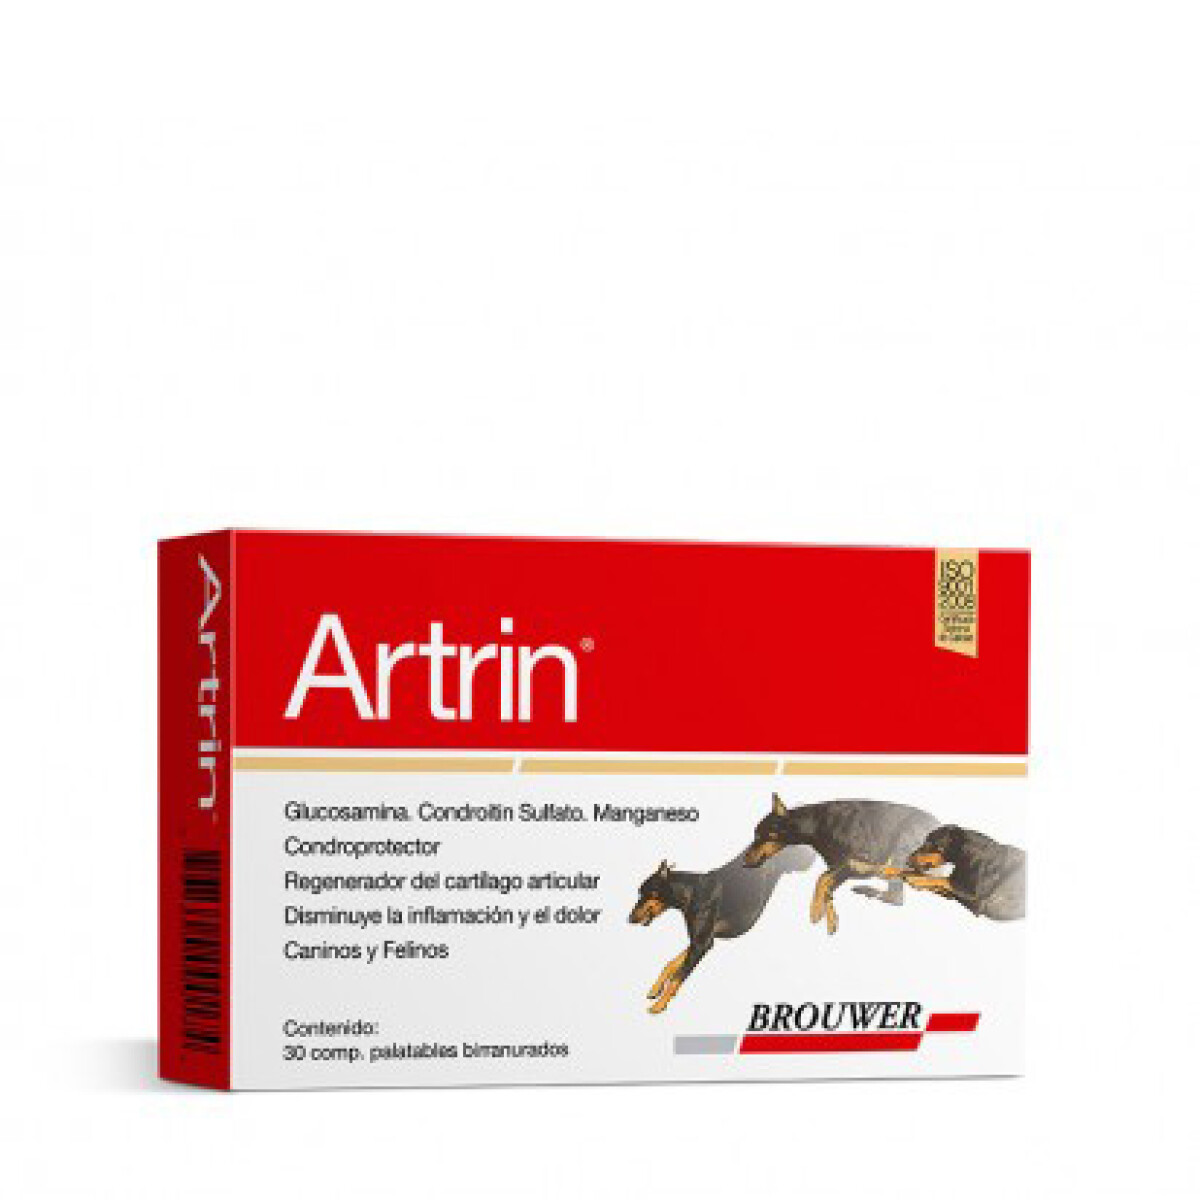 ARTRIN 30 COMPRIMIDOS - Artrin 30 Comprimidos 